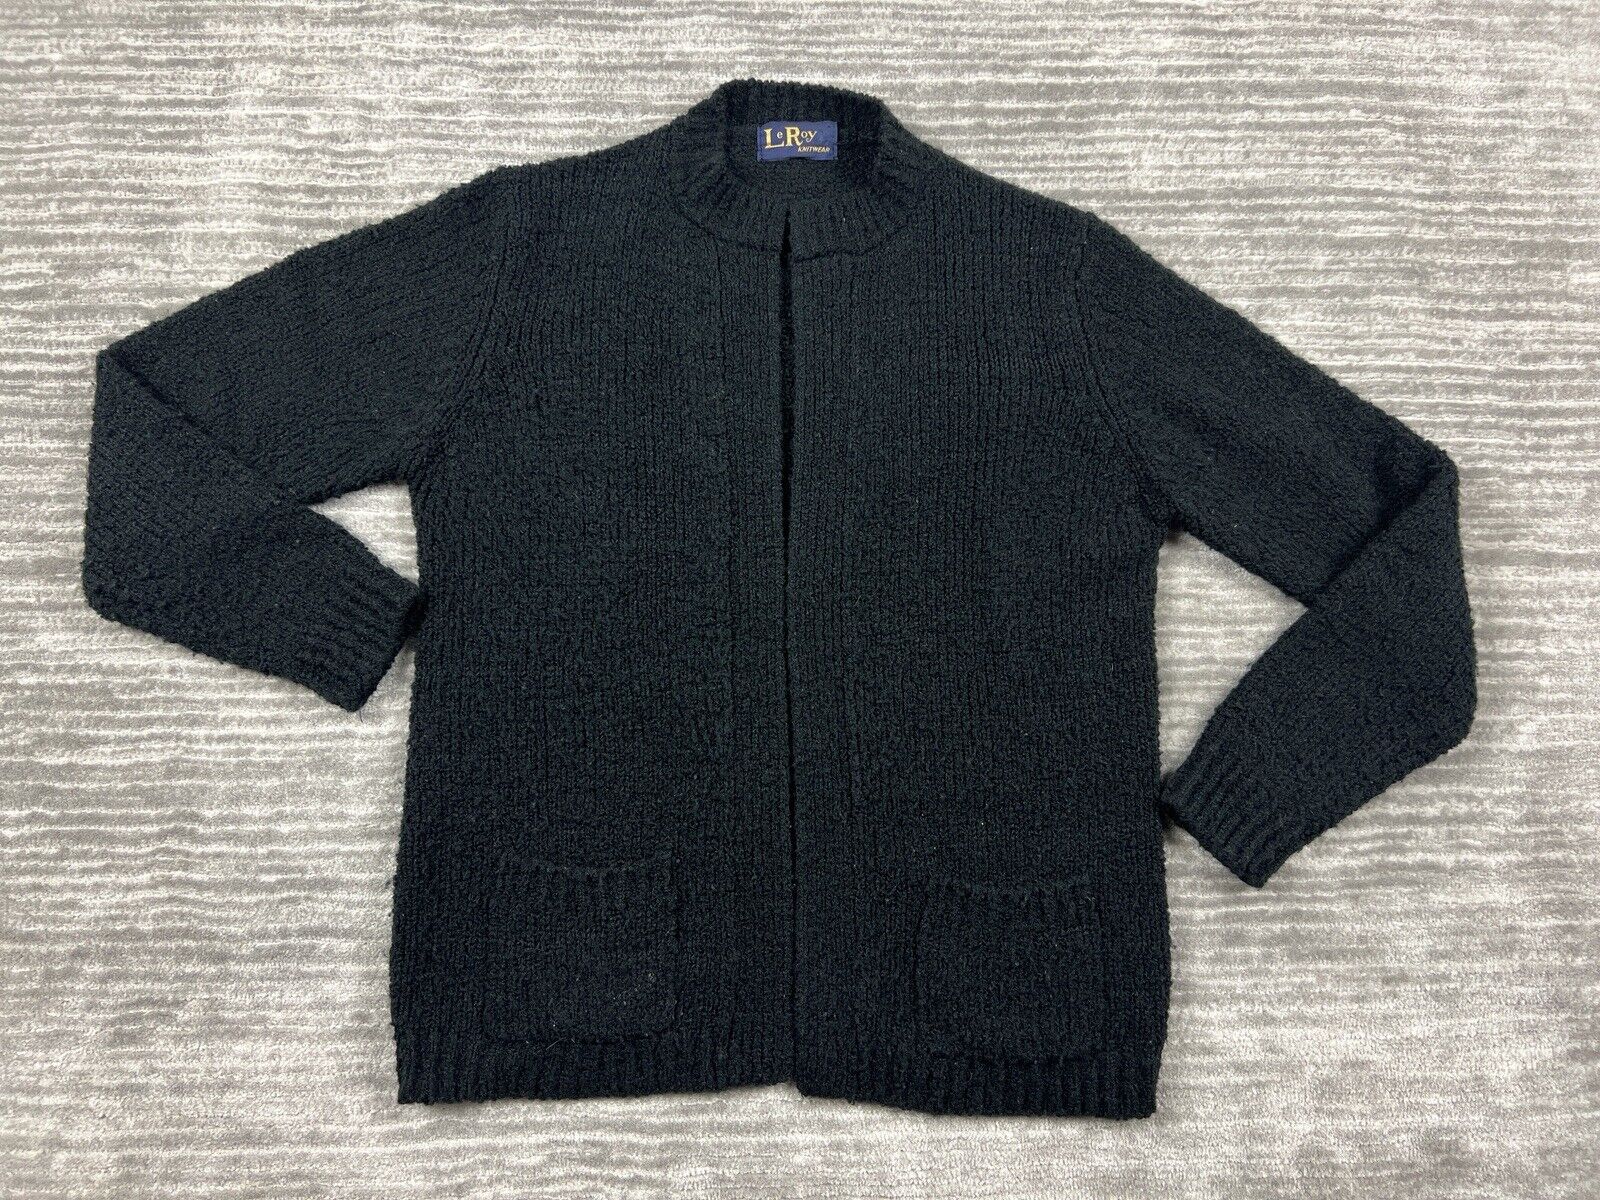 Vintage LeRoy Knitwear Sweater Womens Large Black Open Cardigan Longsleeve